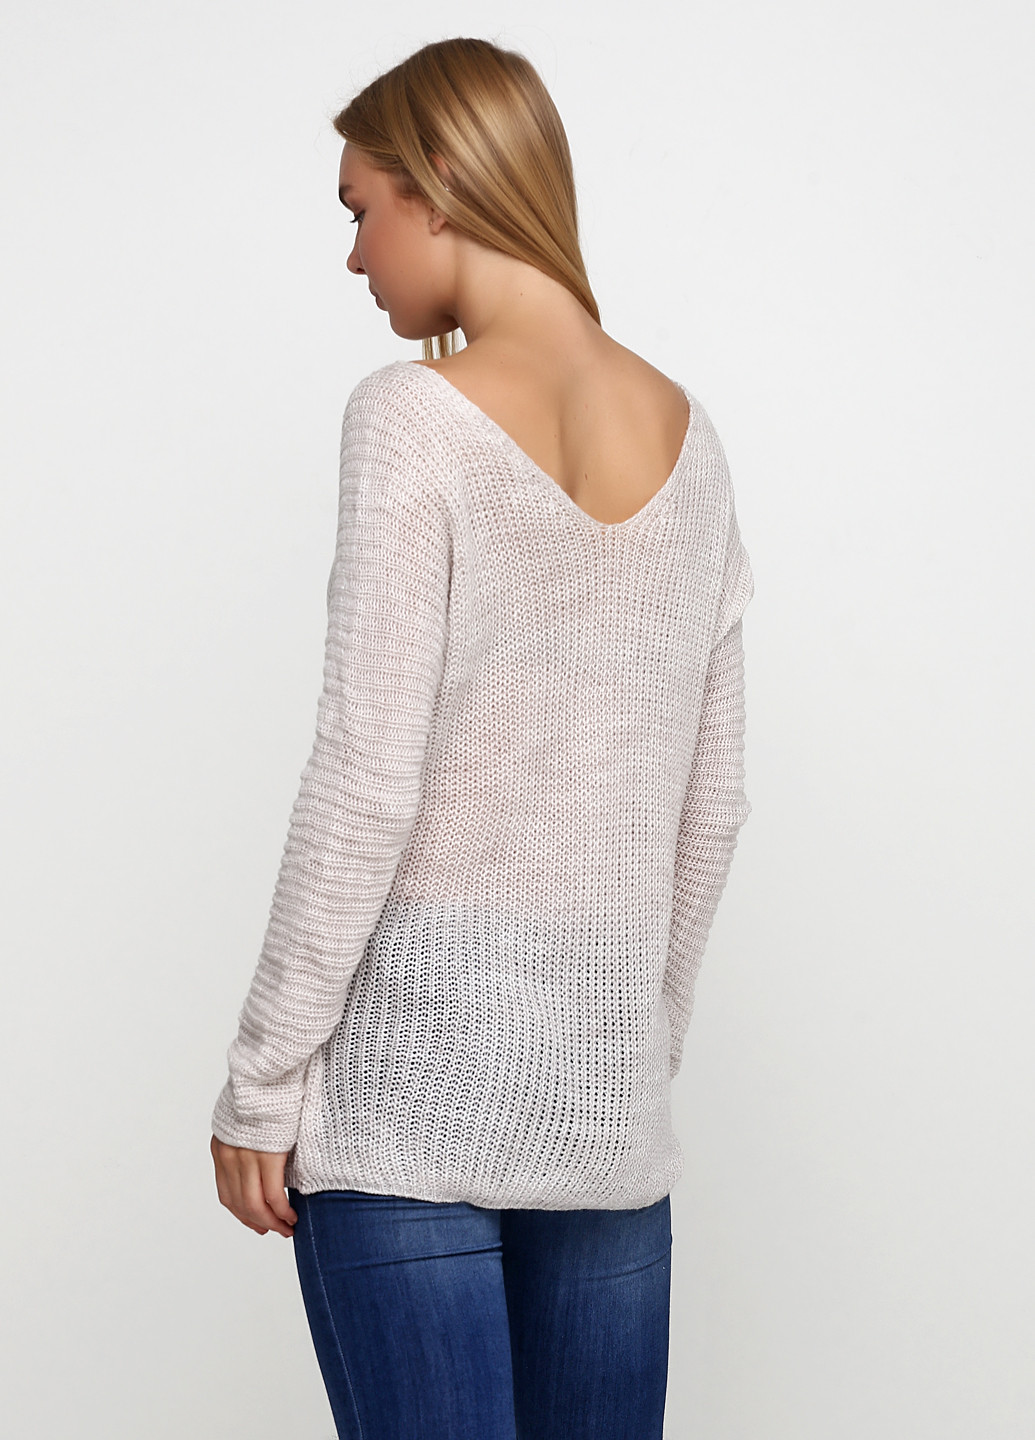 Песочный демисезонный пуловер пуловер Divinka